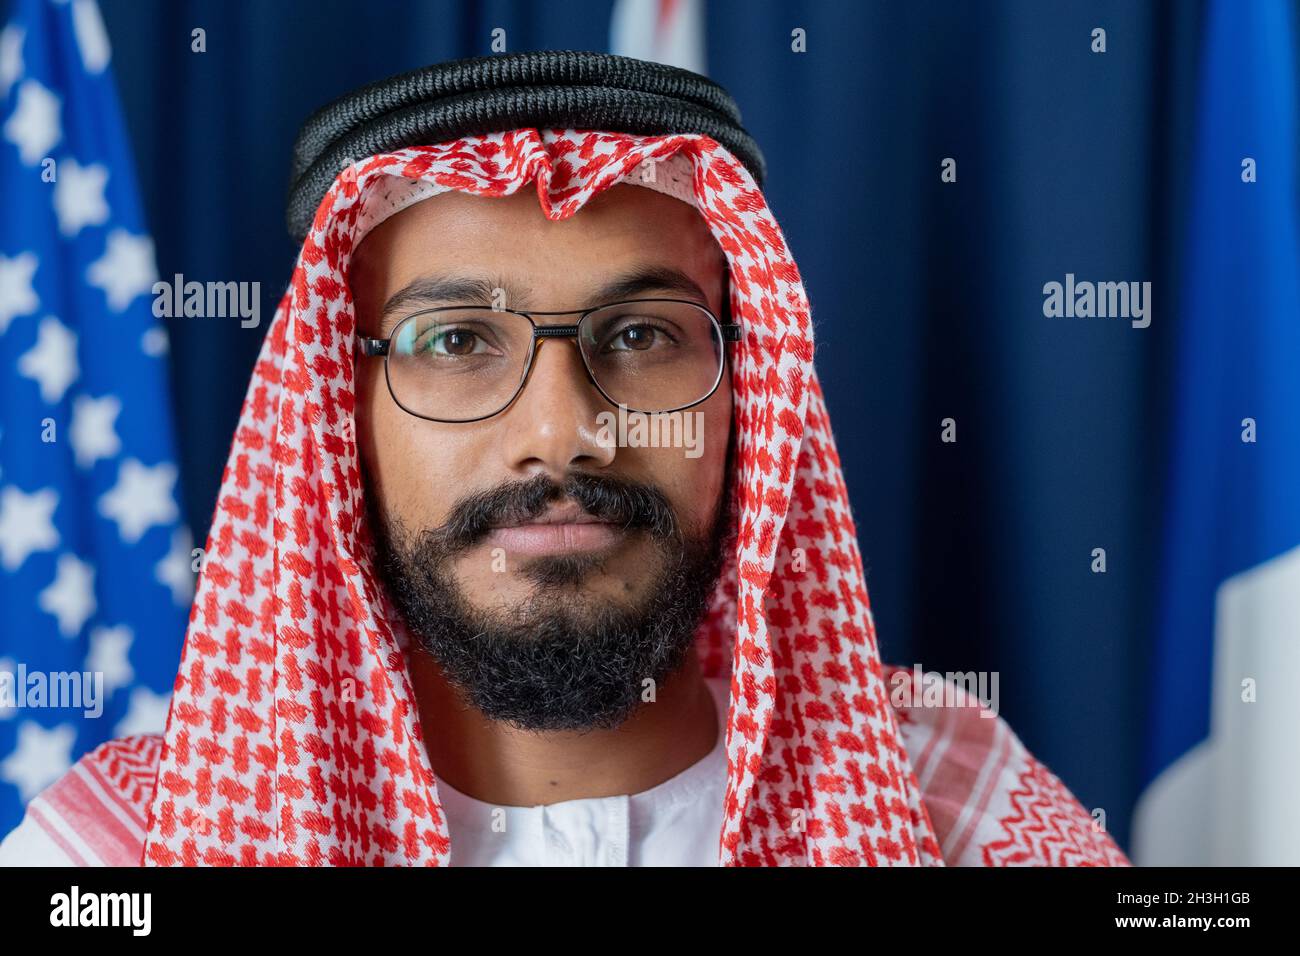 Portrait d'un homme politique musulman sérieux et confiant, vêque de robe nationale, posé contre des rideaux et des drapeaux bleu foncé Banque D'Images